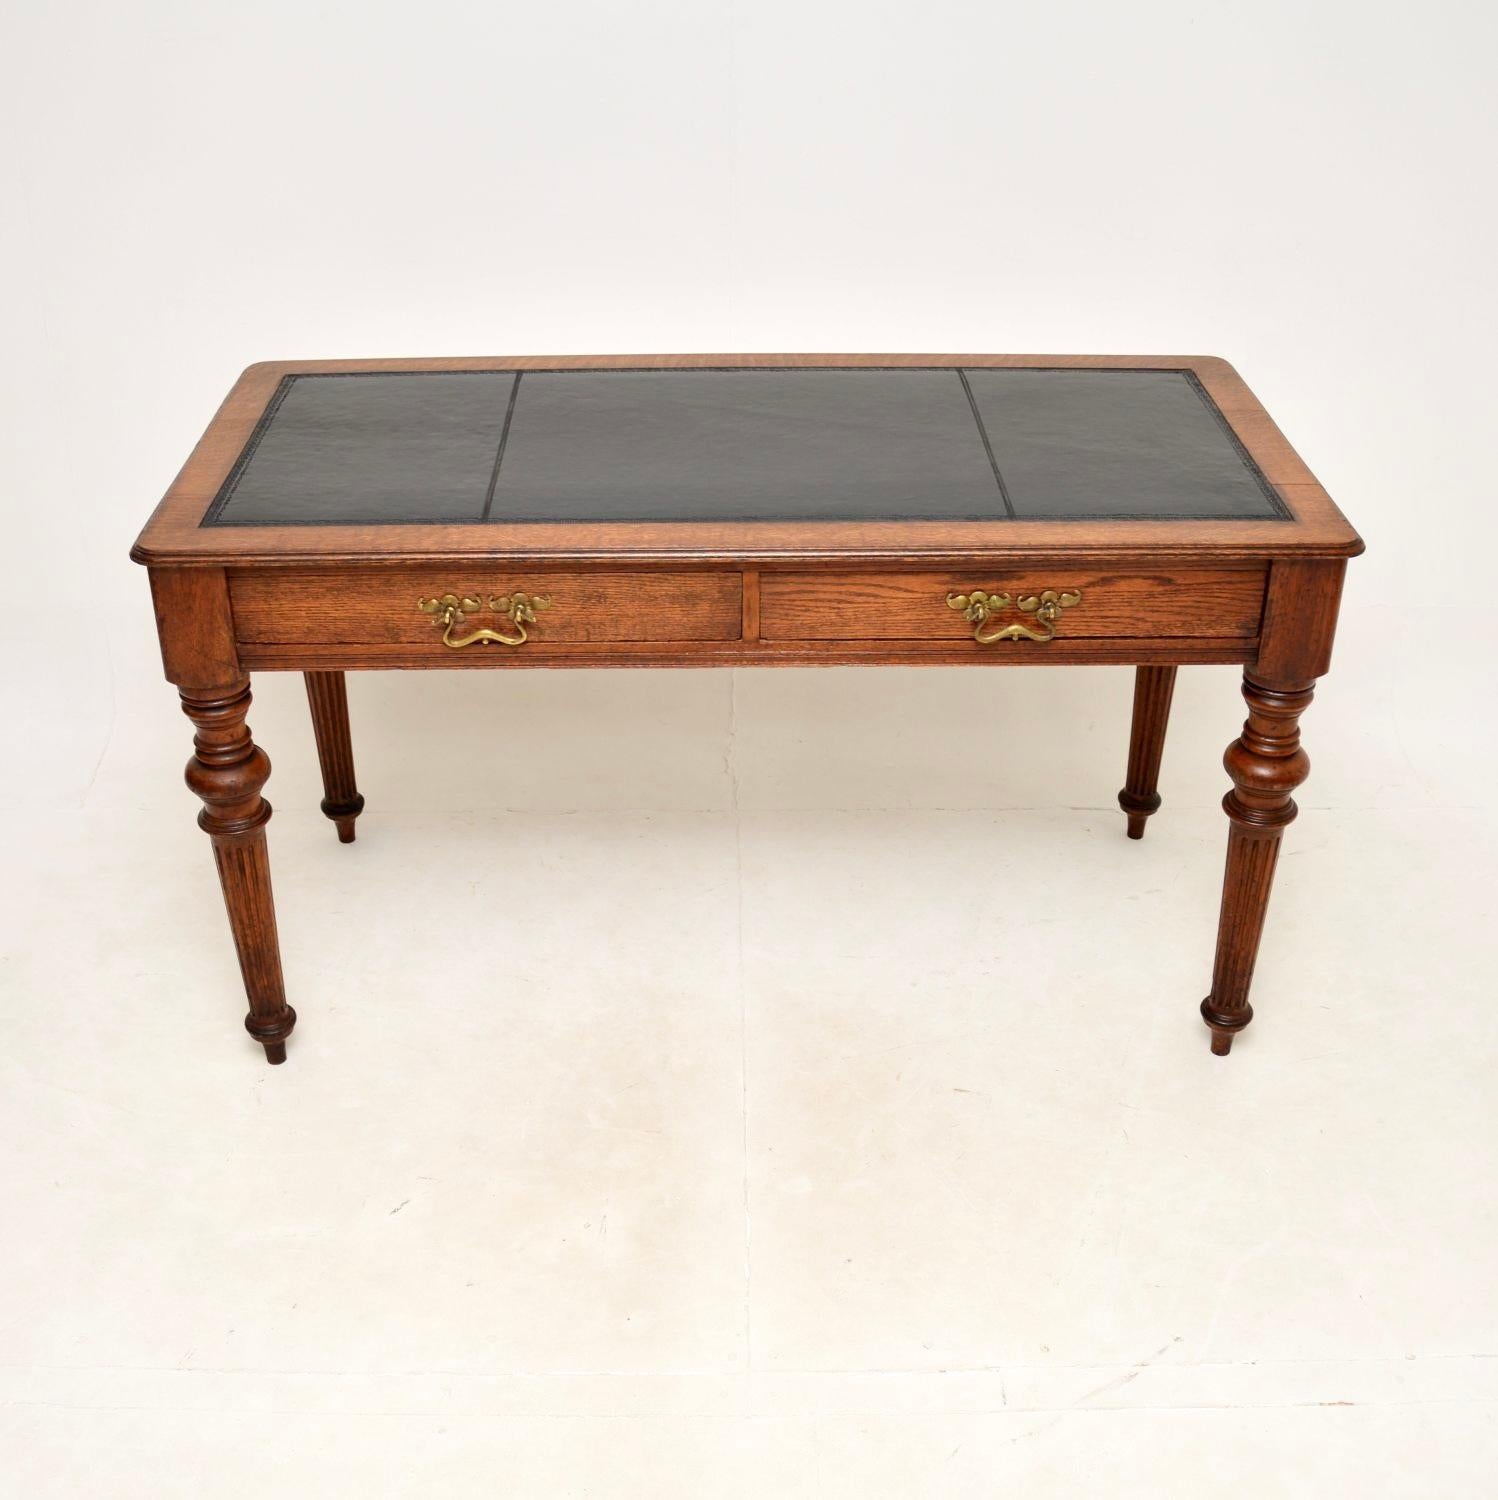 Eine beeindruckende antike viktorianische Eiche Leder oben Schreibtisch / Schreibtisch. Sie wurde in England hergestellt und stammt aus der Zeit zwischen 1870 und 1890.

Er ist von hervorragender Qualität, durchgehend aus massiver Eiche und mit